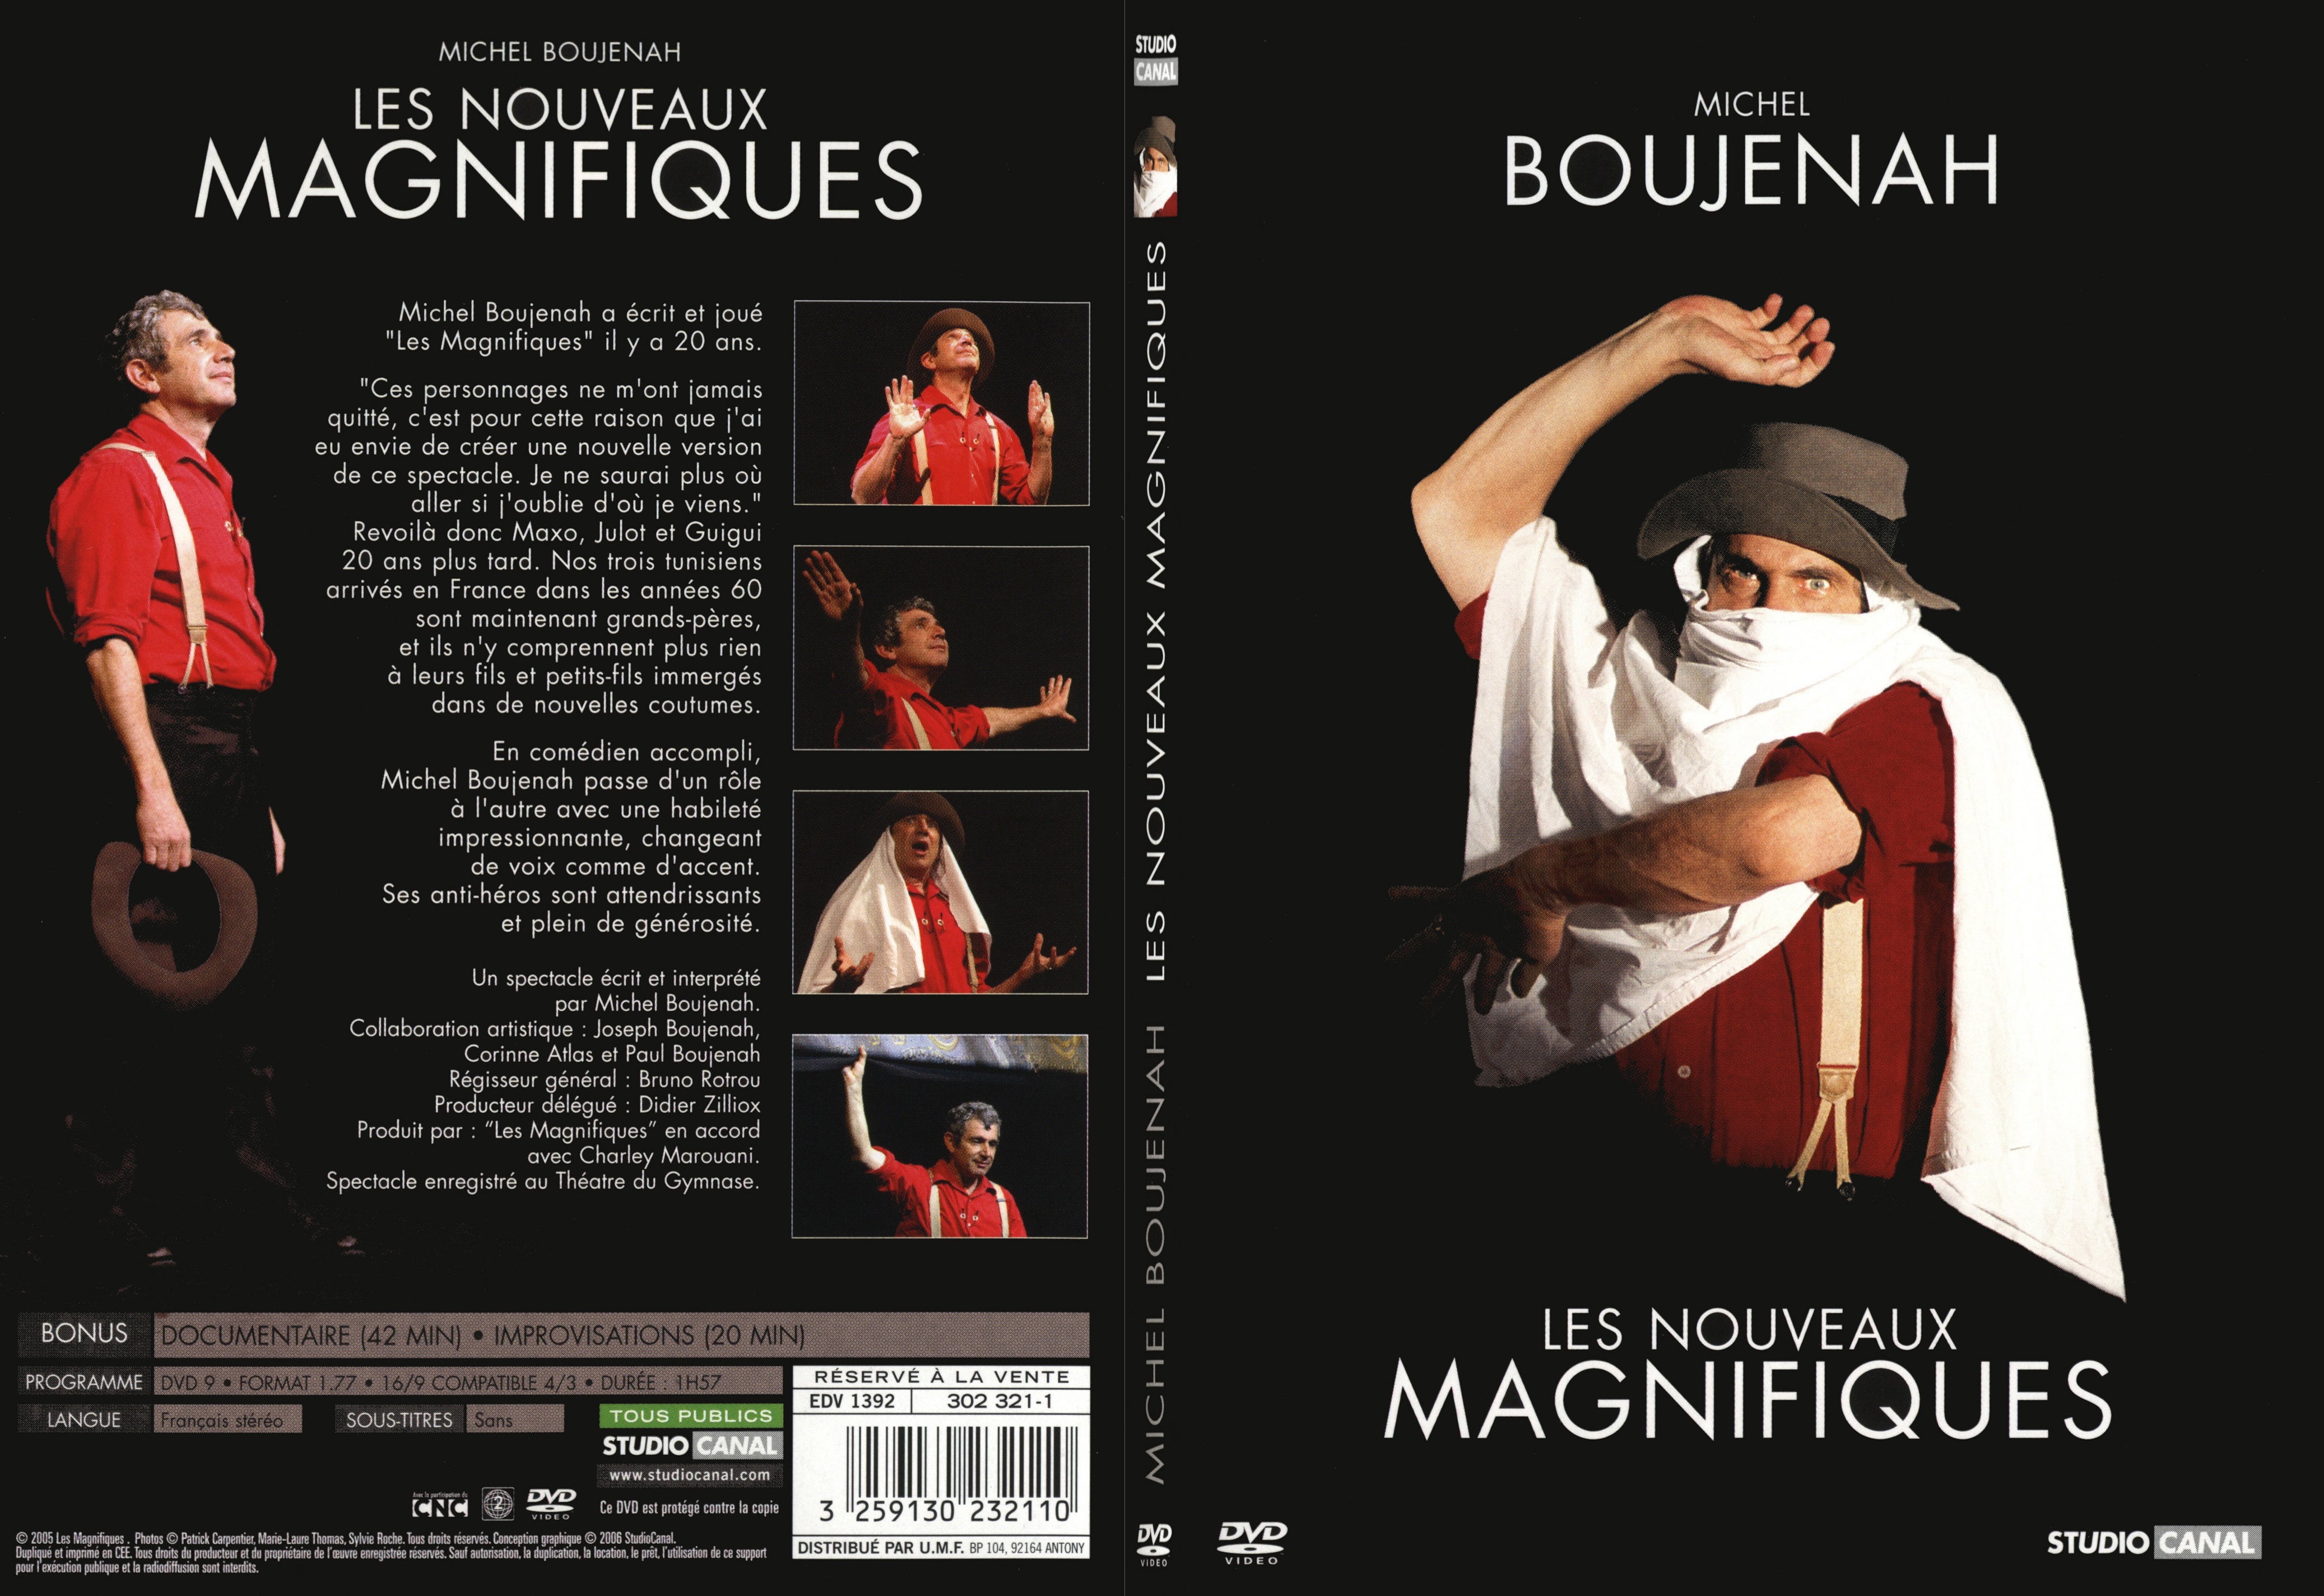 Jaquette DVD Michel Boujenah les nouveaux magnifiques - SLIM